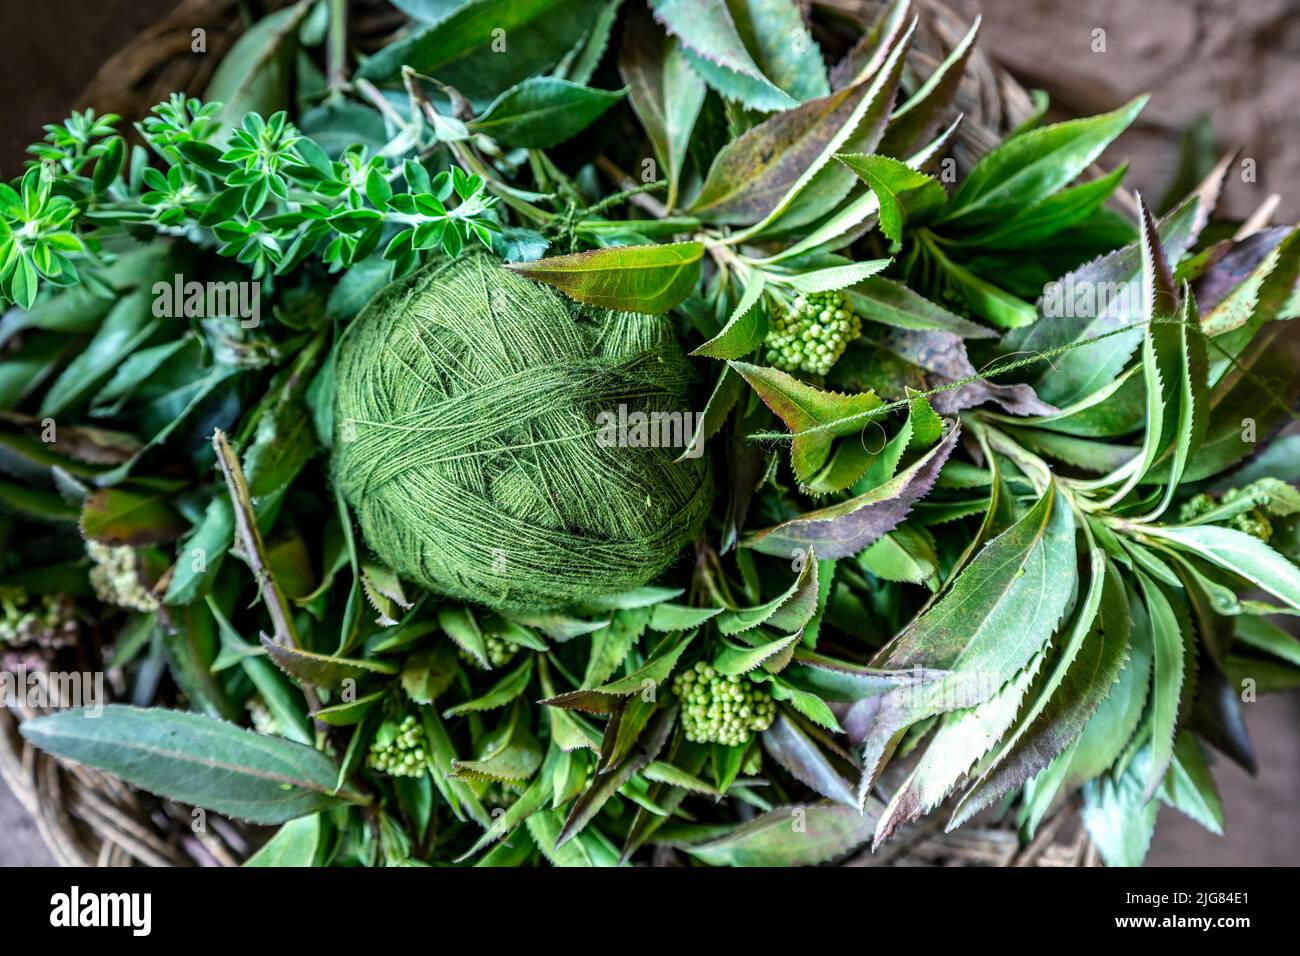 Bola verde de hilo e ingrediente que la produjo, tienda de tejedores El Balcon del Inka, Chinchero, Cusco, Perú Foto de stock